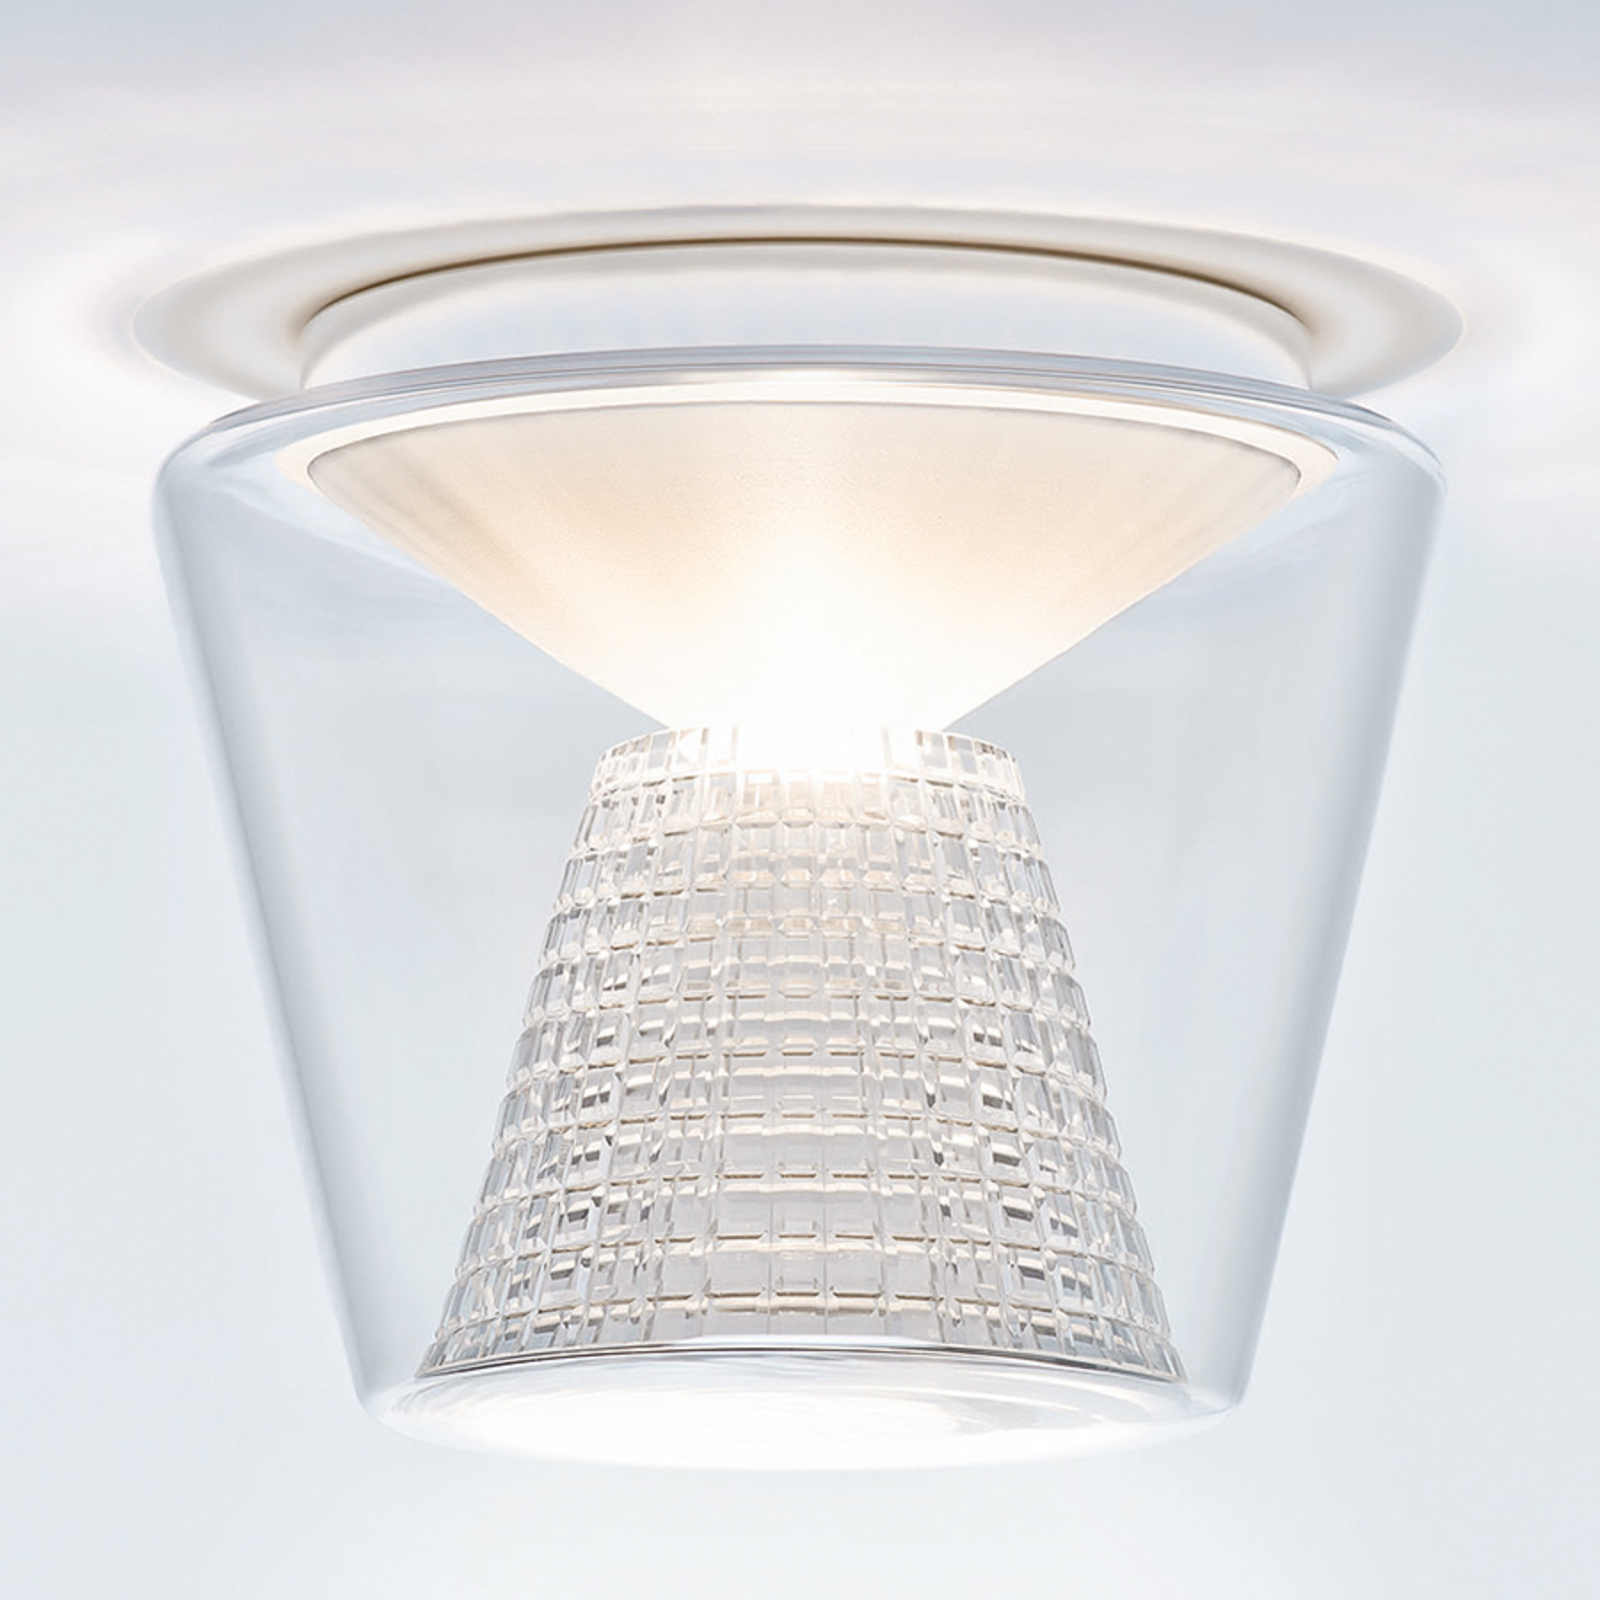 Annex - LED-taklampa med kristallreflektor